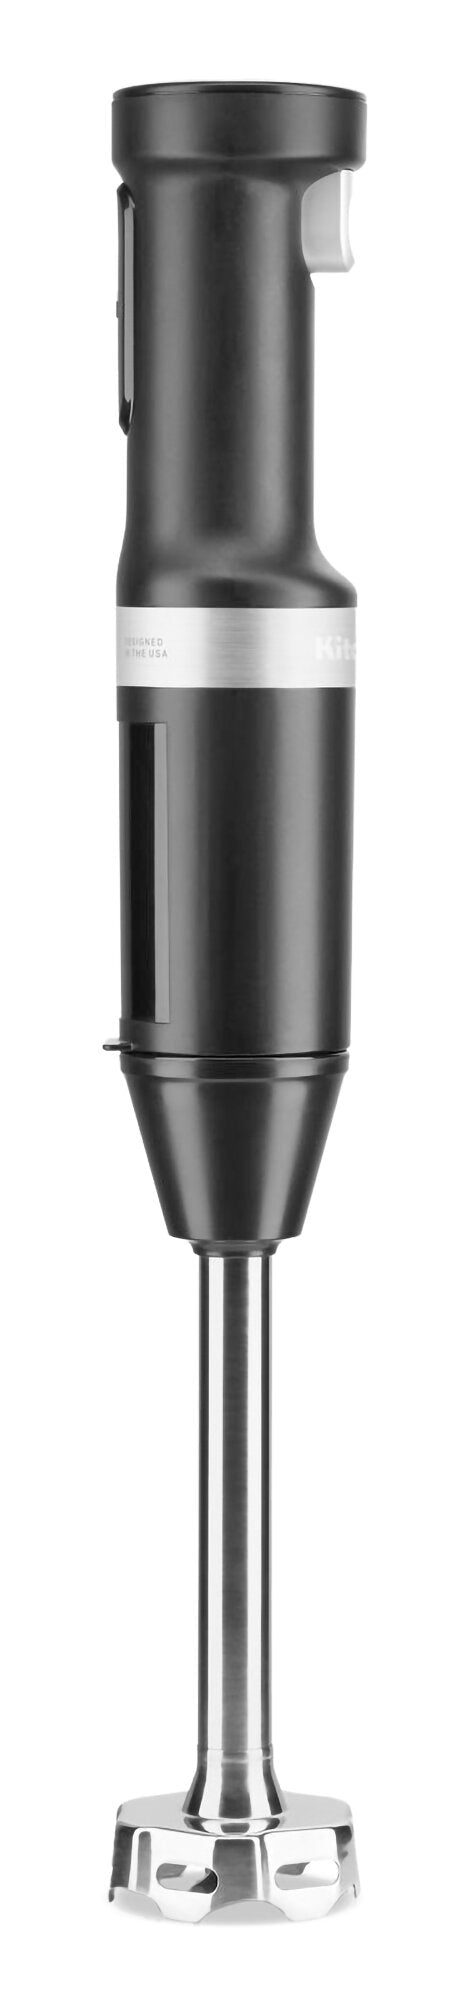 KitchenAid Variable Speed Cordless Hand Blender - KHBBV53BM - Blender in Black Matte 